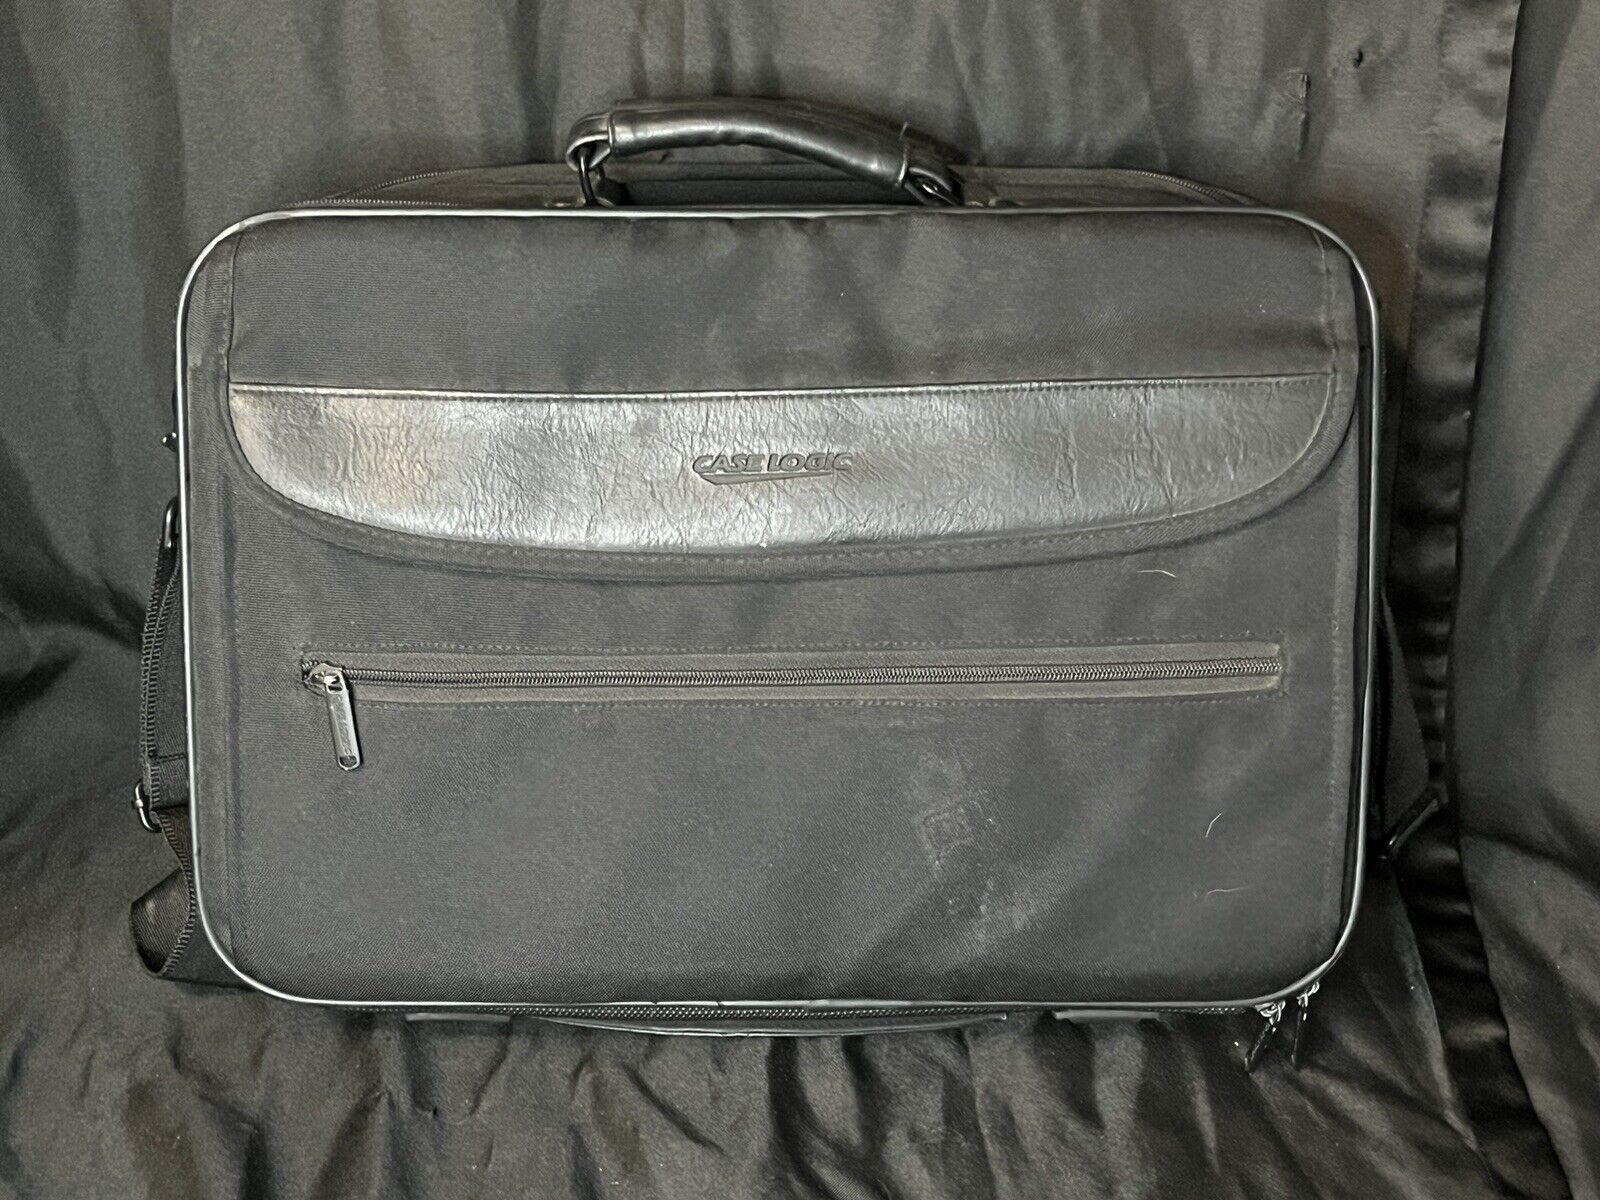 Case Logic Laptop Case Bag Fits 15” Laptop